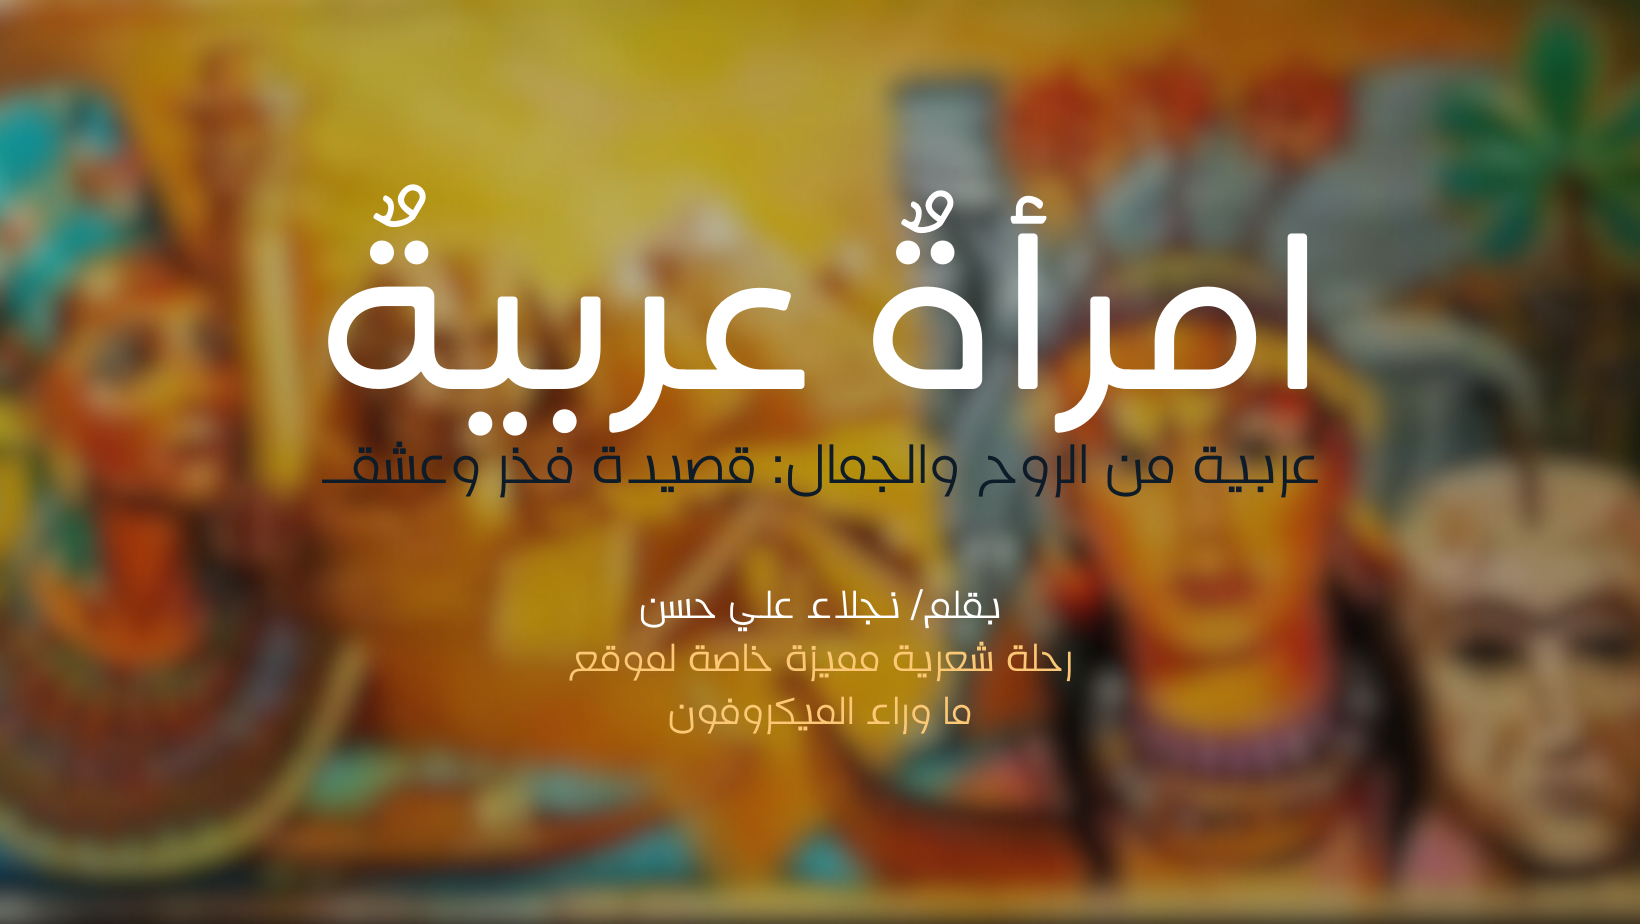 امرأةٌ عربيةٌ عربية من الروح والجمال: قصيدة فخر وعشق - بقلم/ نجلاء علي حسن